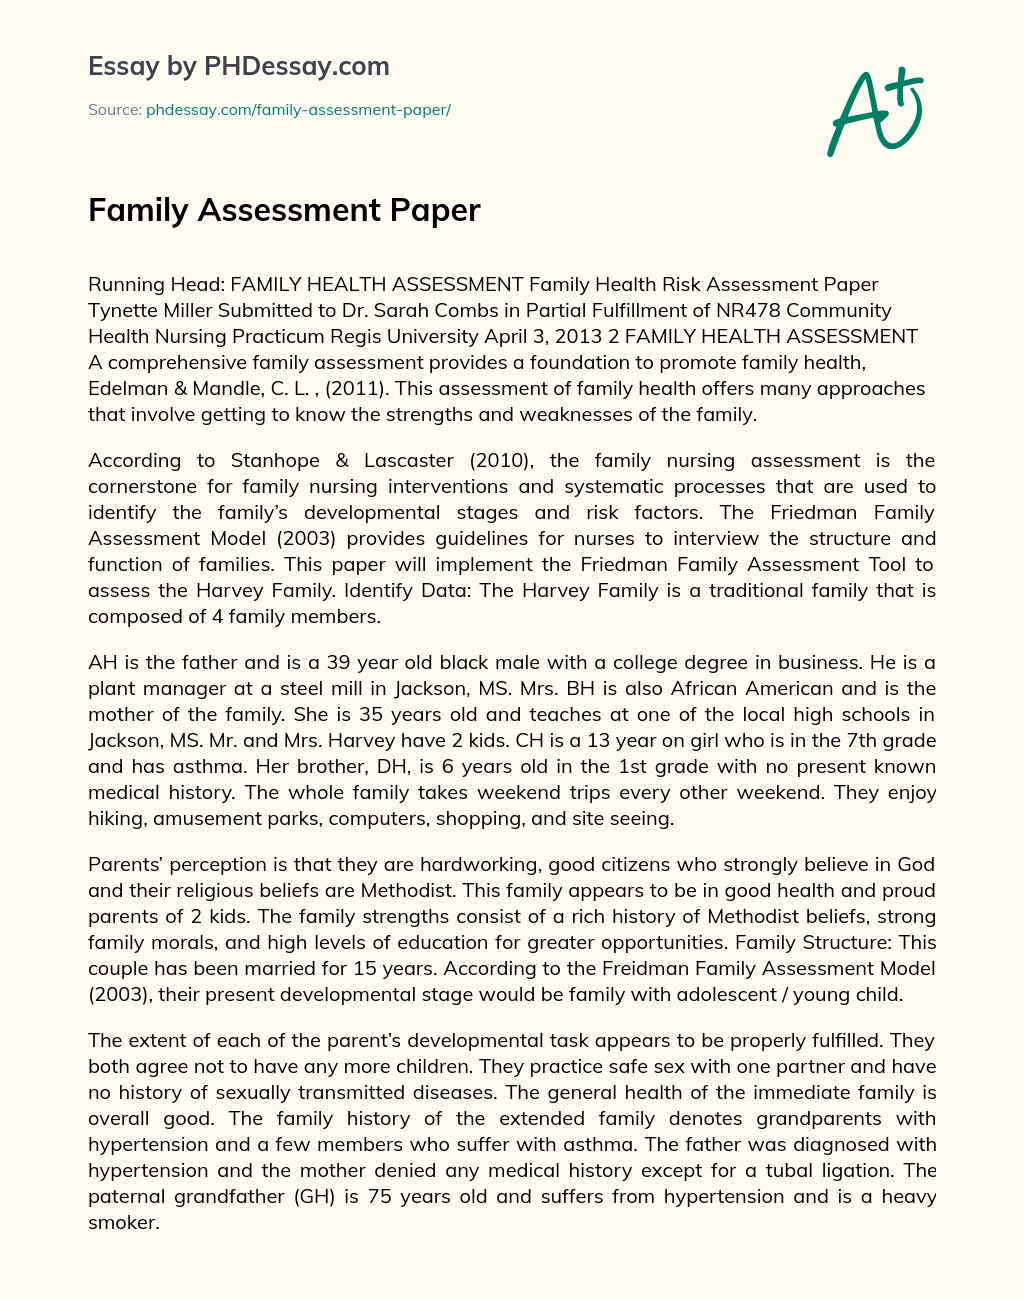 family health assessment paper